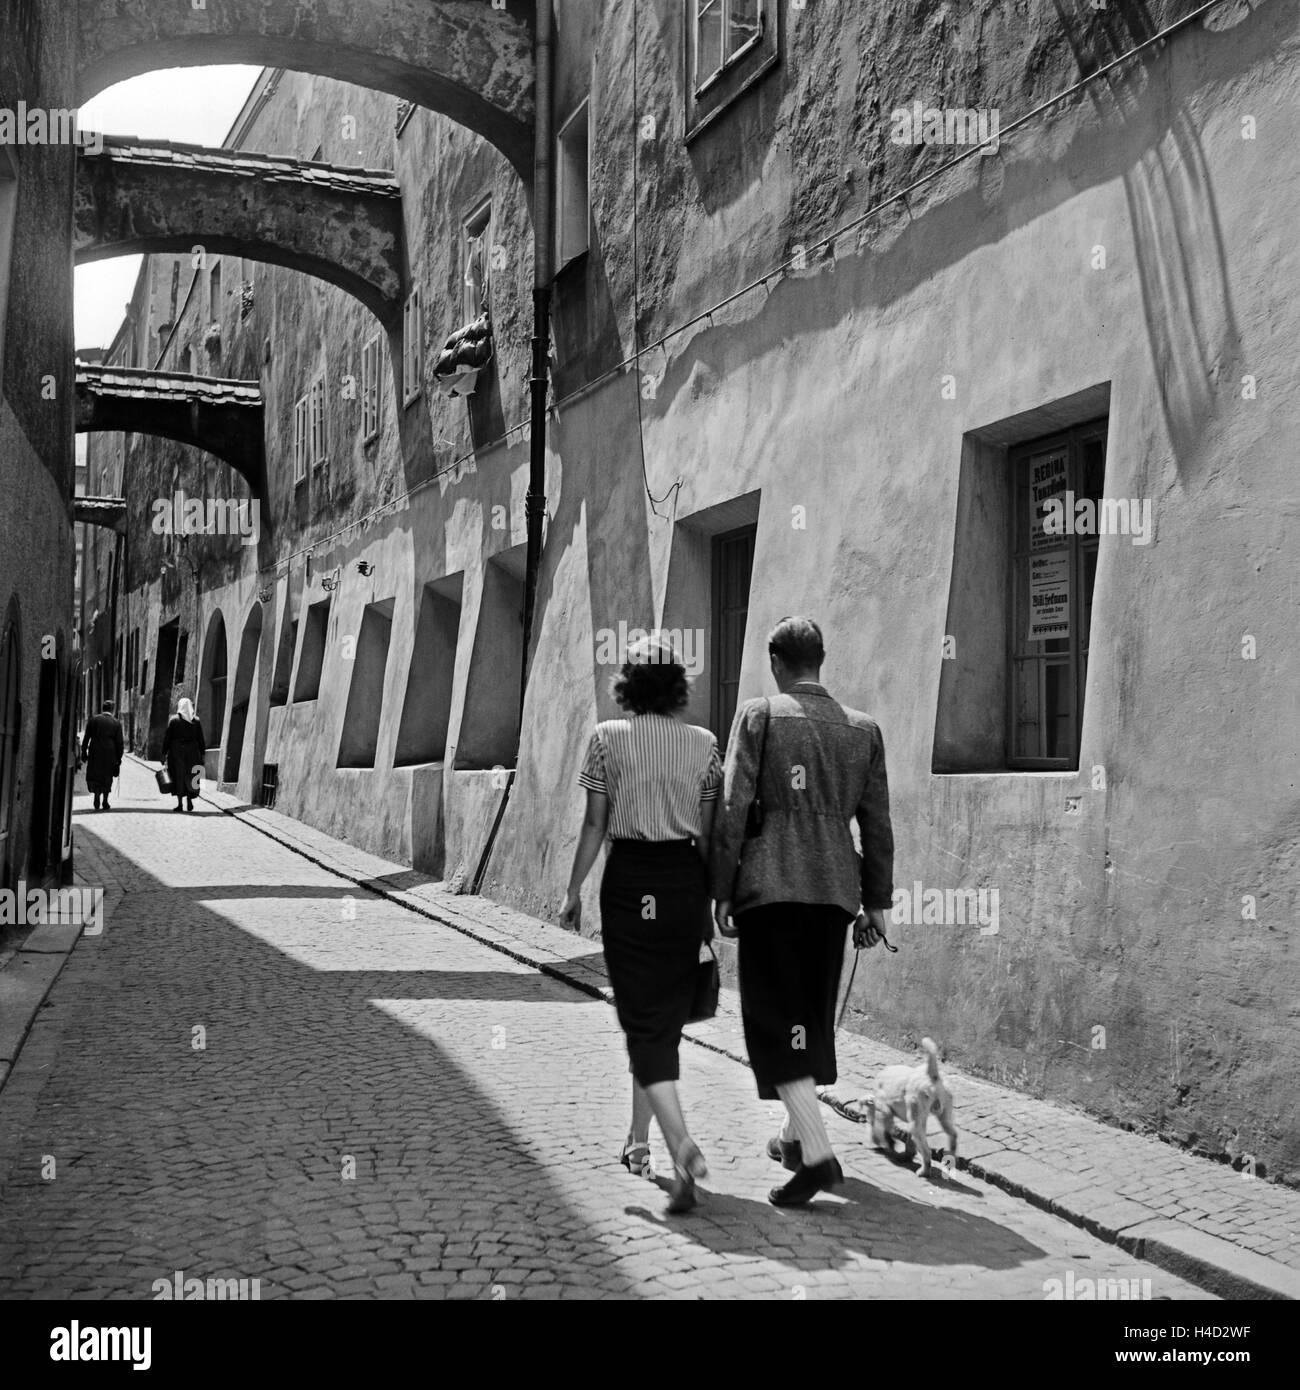 Menschen spazieren durch die Nagelschmiedgasse in Passau, Deutschland 1930er Jahre. People on their way through Nagelschmiedgasse lane at Passau, Germany 1930s. Stock Photo